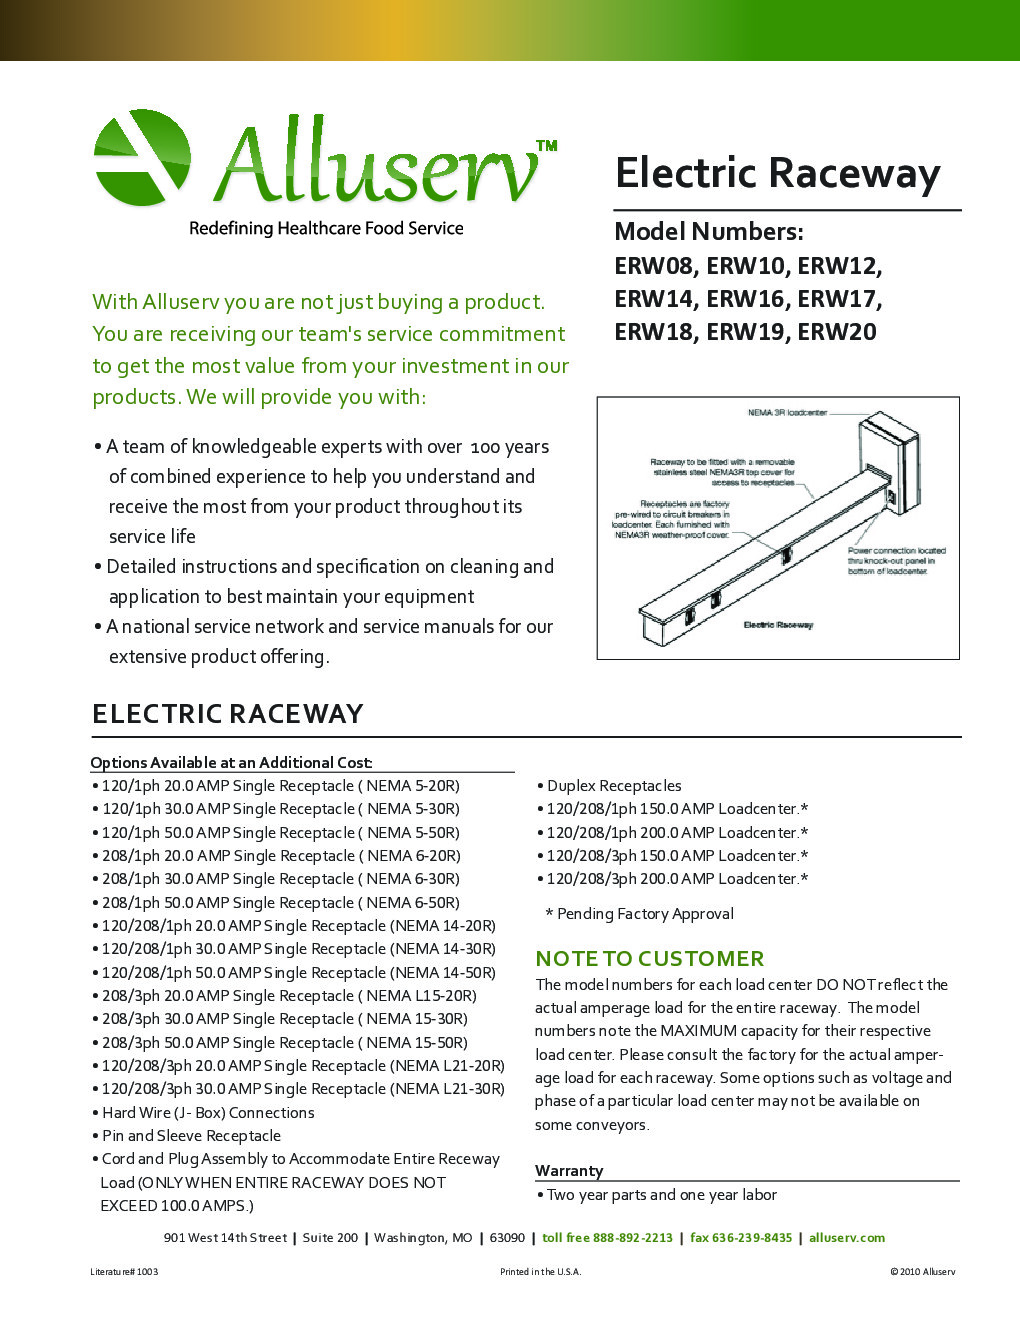 Alluserv ERW10 Electrical Raceway, 10 foot